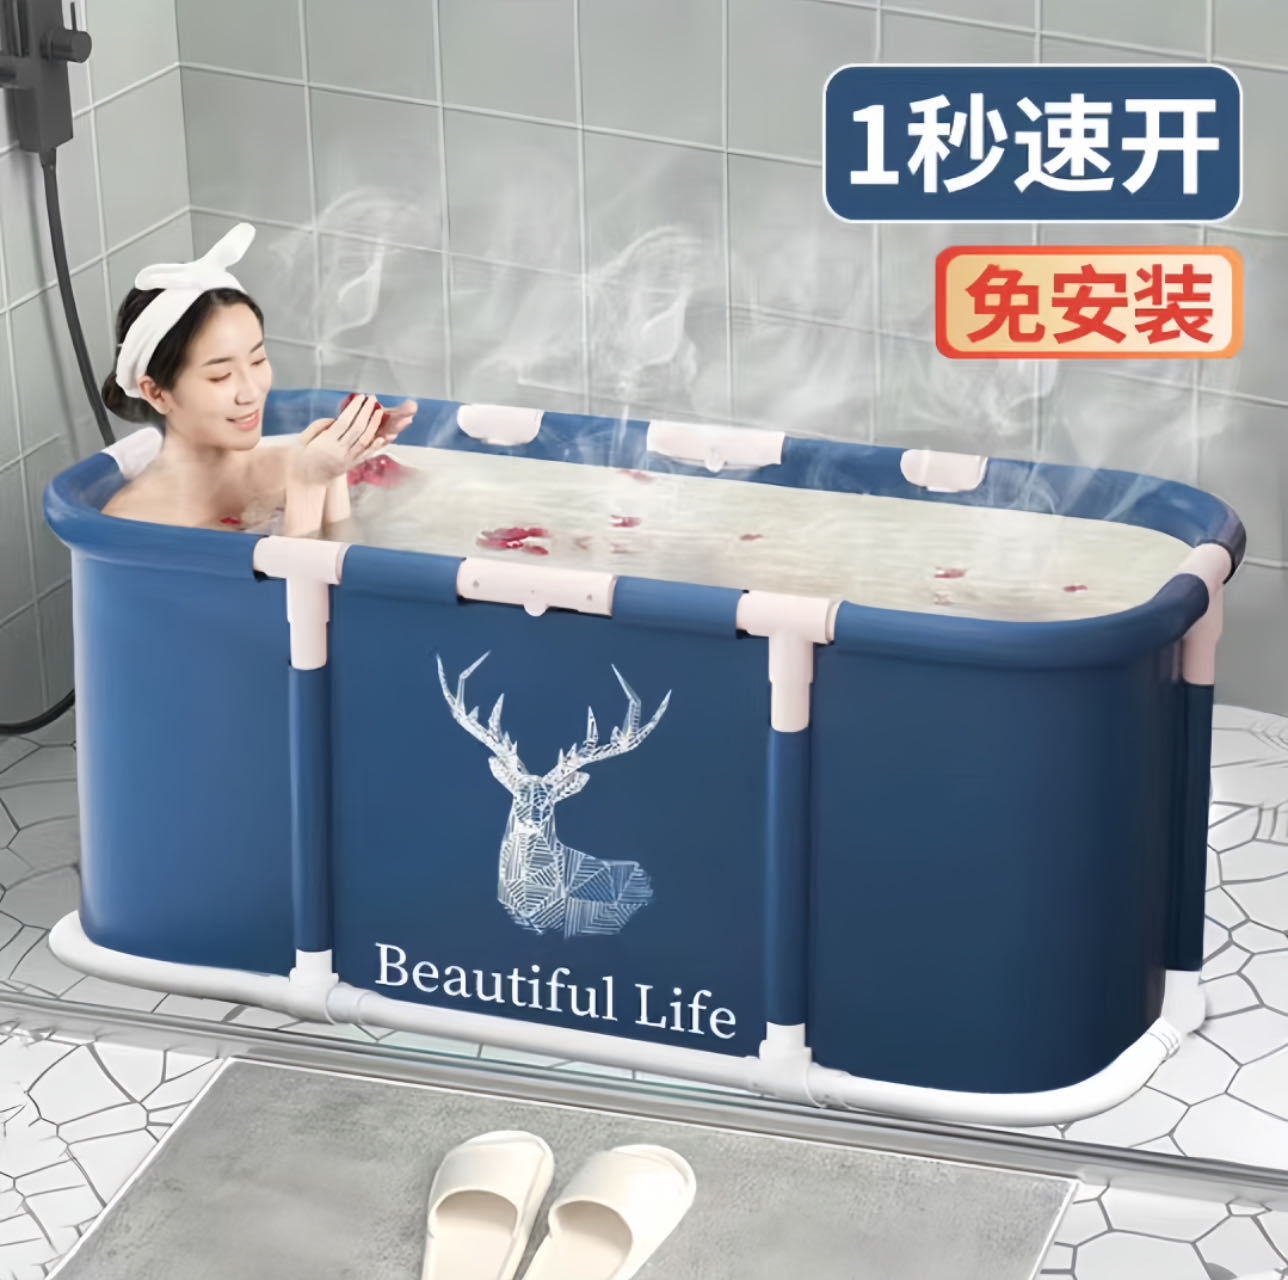 免安装长方形泡澡桶 家用便携浴桶 加厚保温洗澡桶可折叠浴缸